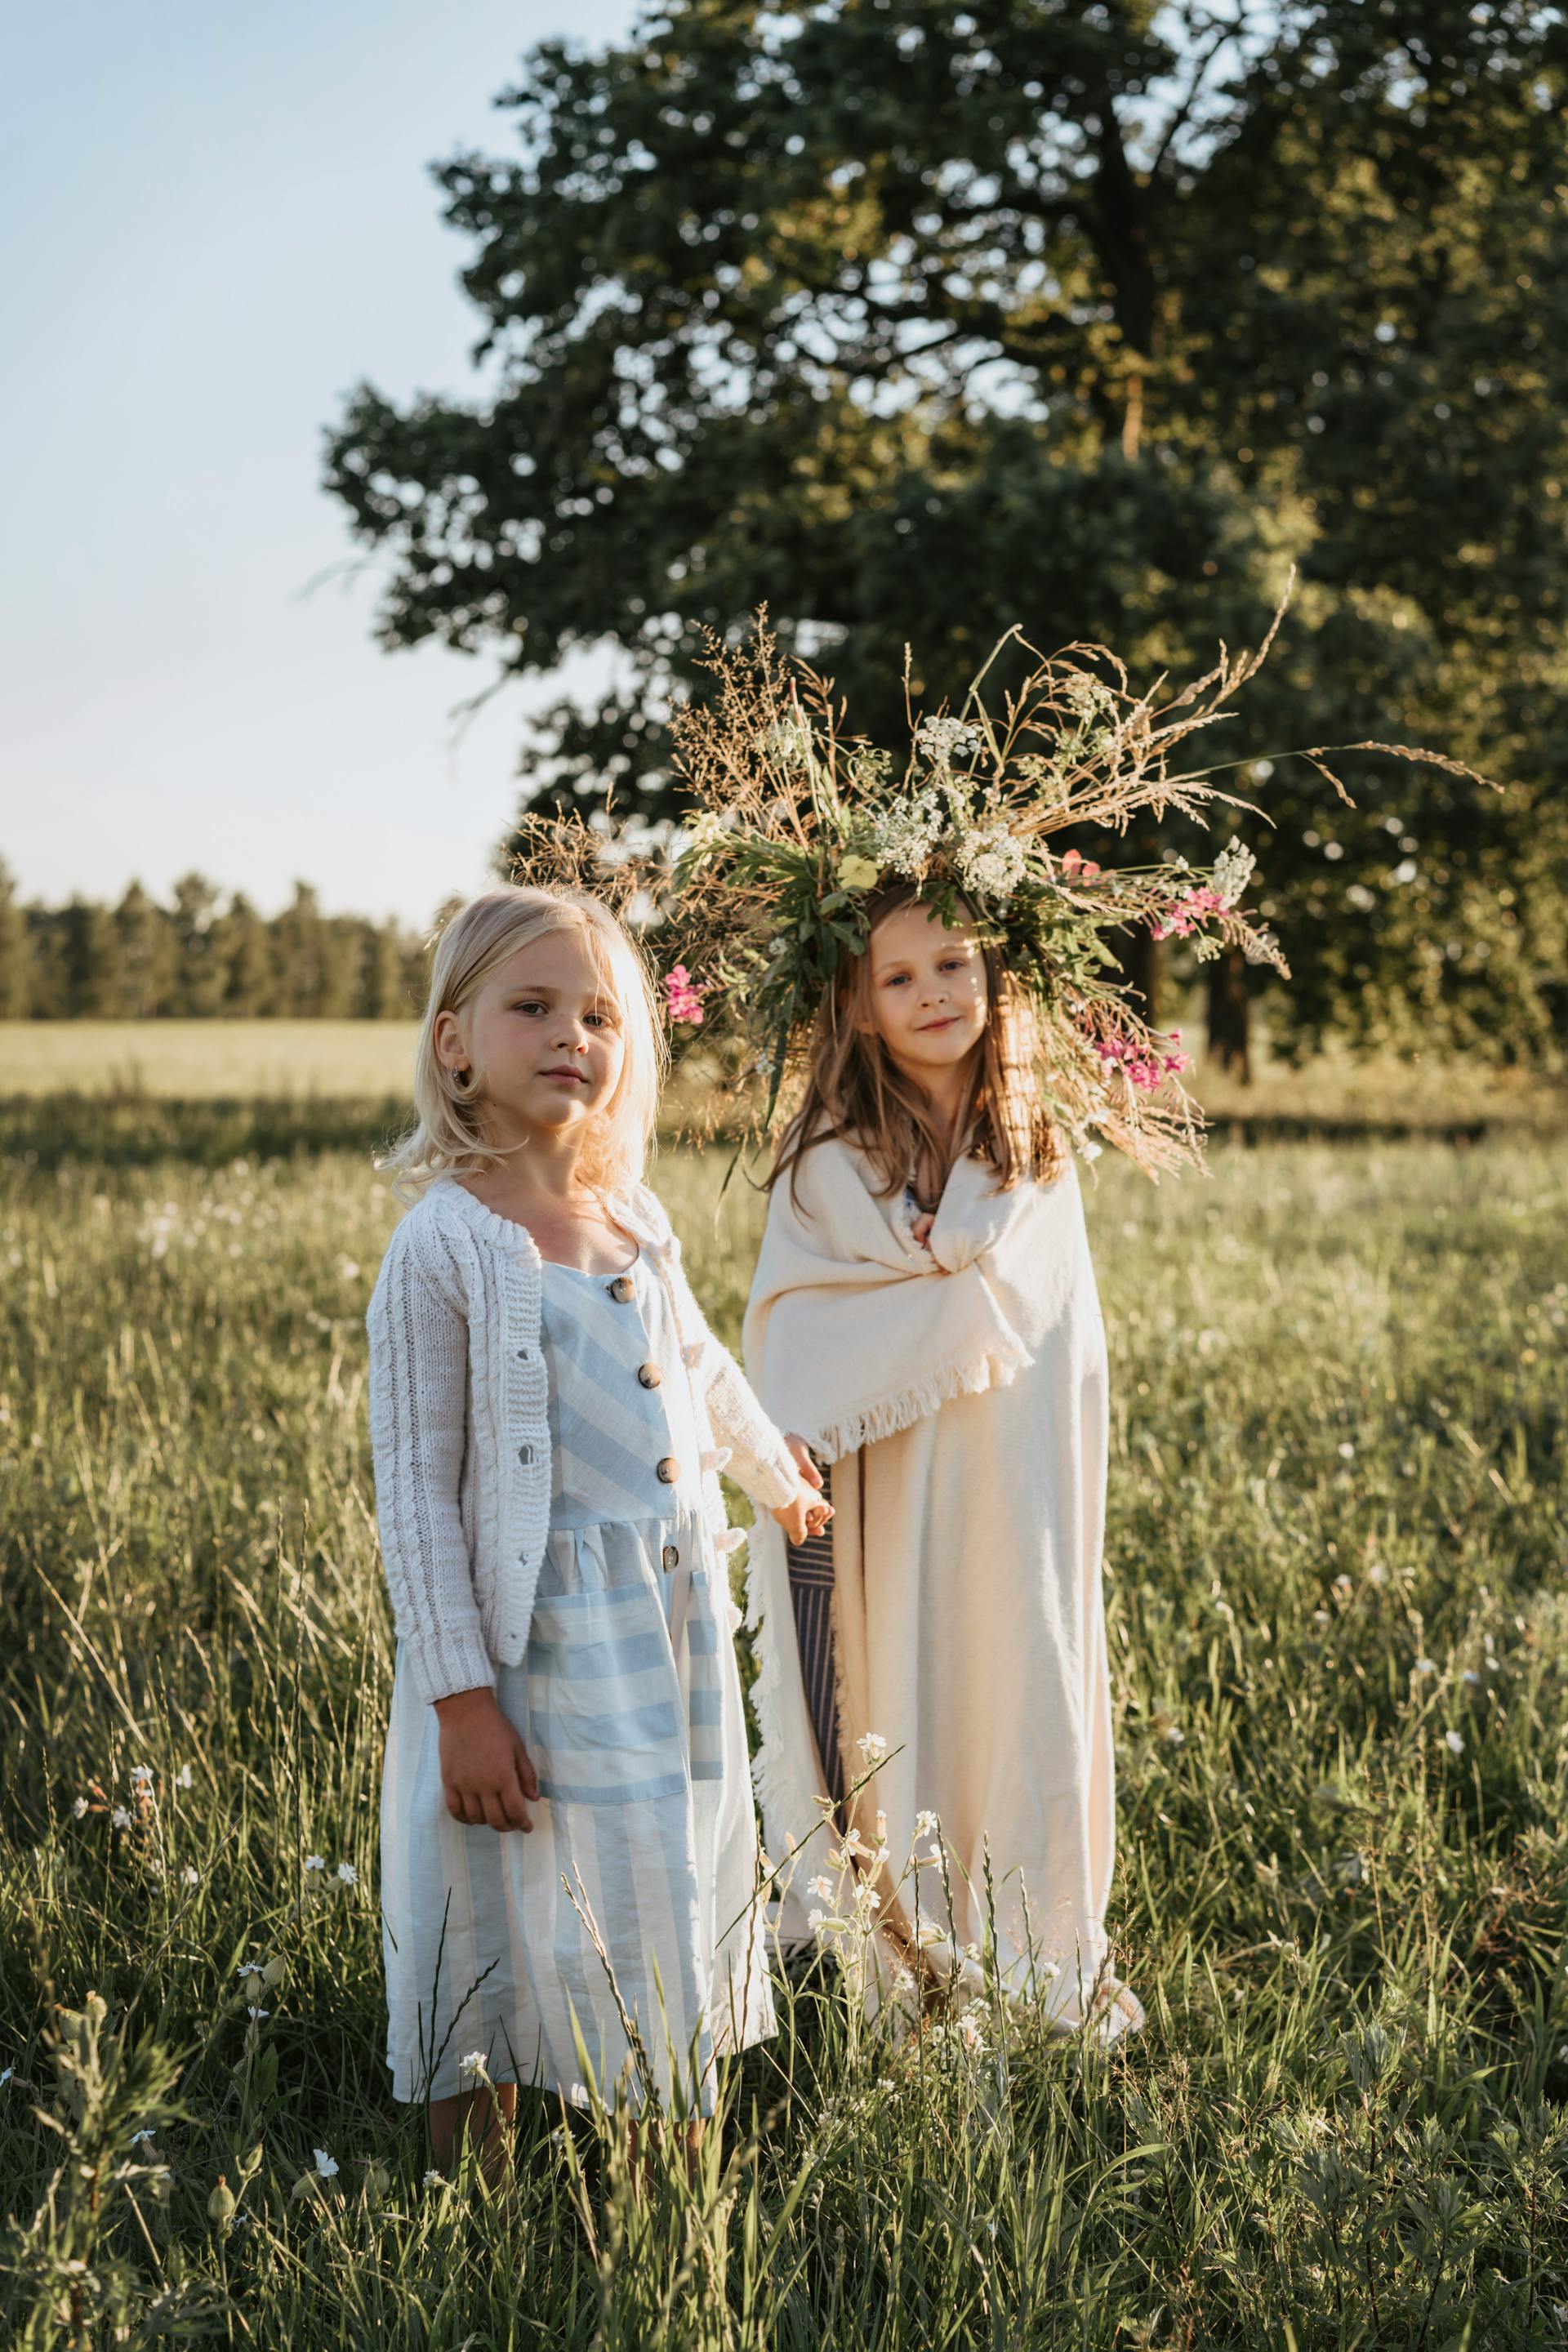 Zwei kleine Mädchen im Freien | Quelle: Pexels